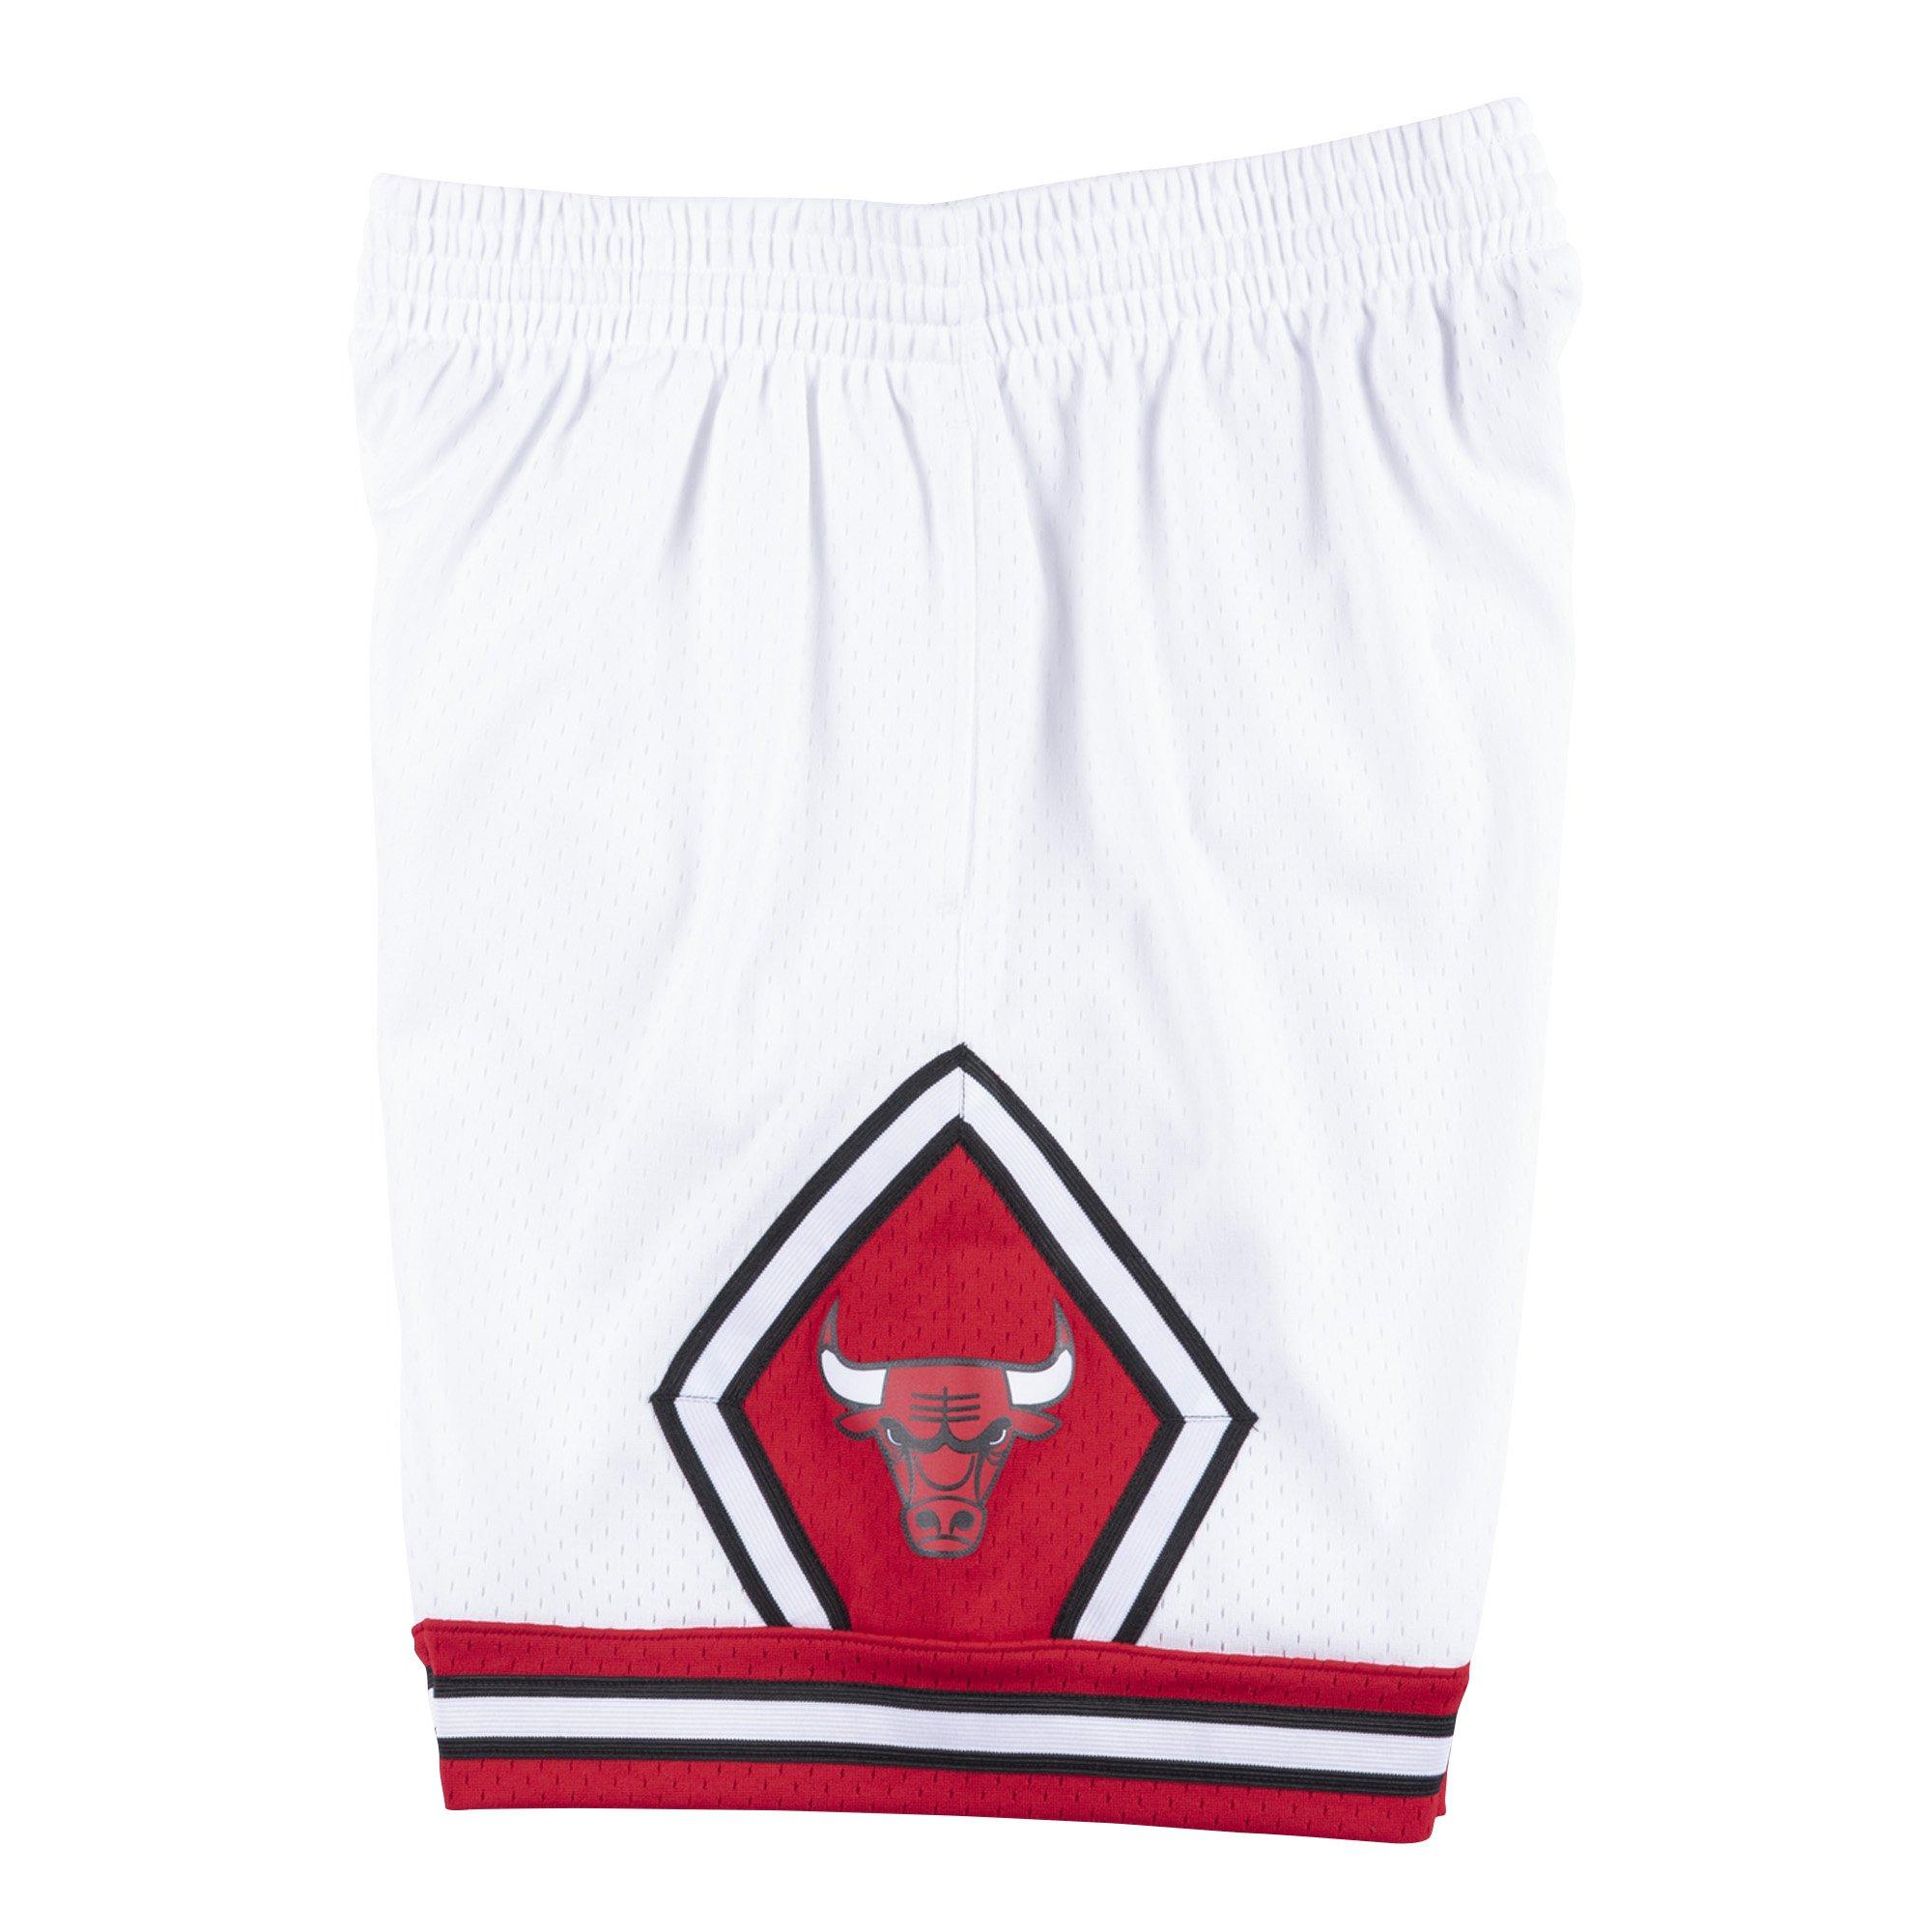 إبراهيم القرشي Mitchell & Ness Men's Chicago Bulls Swingman Shorts - White إبراهيم القرشي